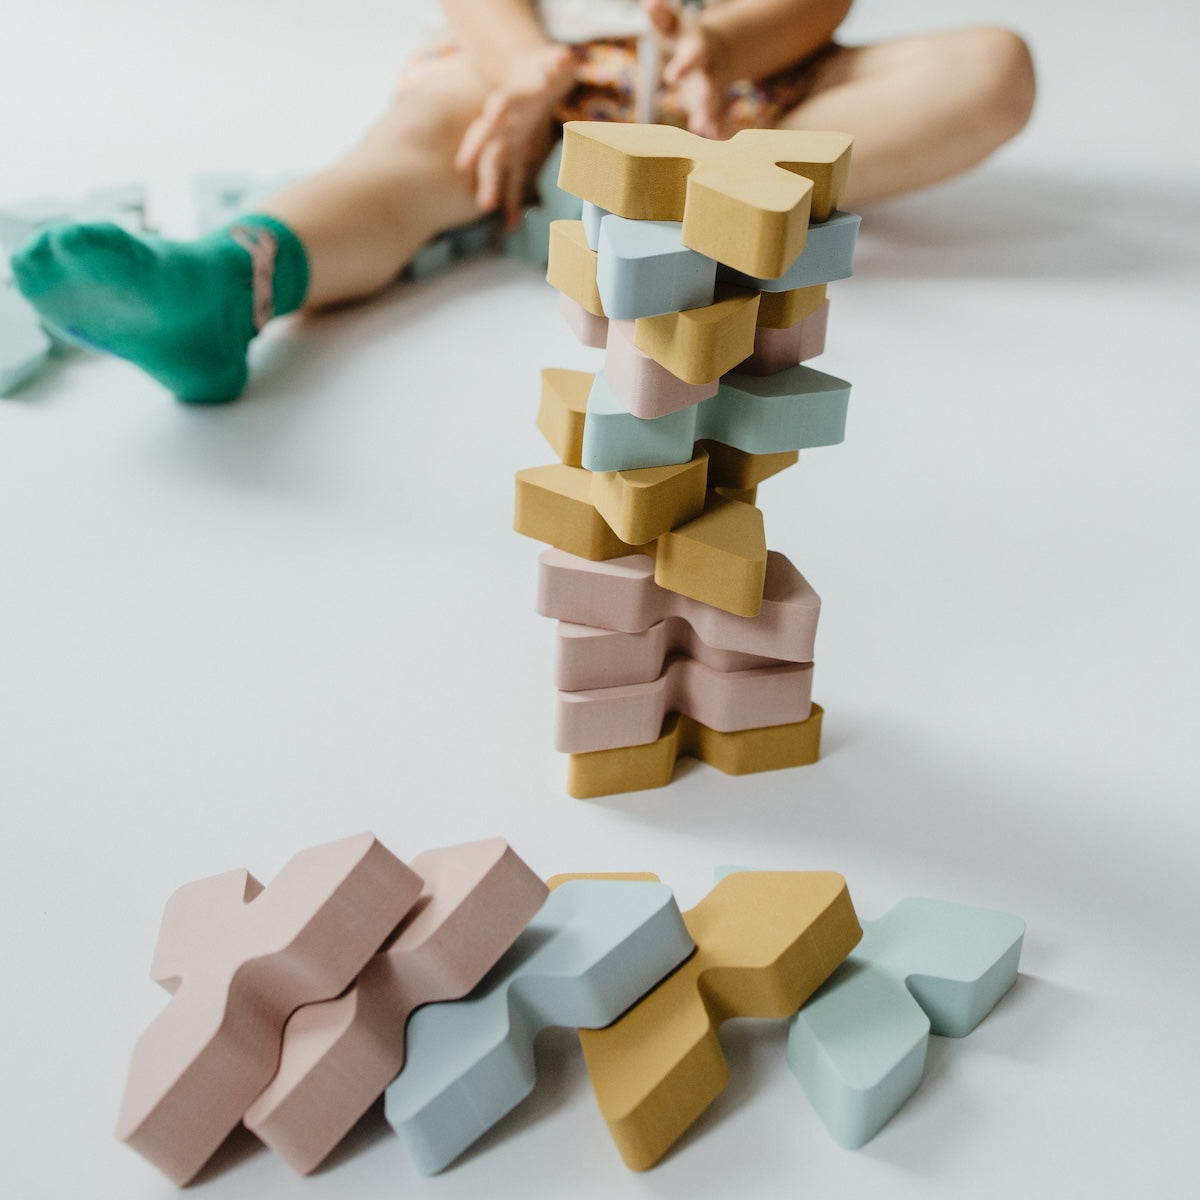 Bouwen met blokken is nét wat interessanter met deze Moes Play Trianglo bouwblokken. Dit zijn namelijk geen gewone blokken, maar dit zijn unieke driehoekige vormen, ontworpen om bouwen, puzzelen en stapelen te bevorderen. VanZus